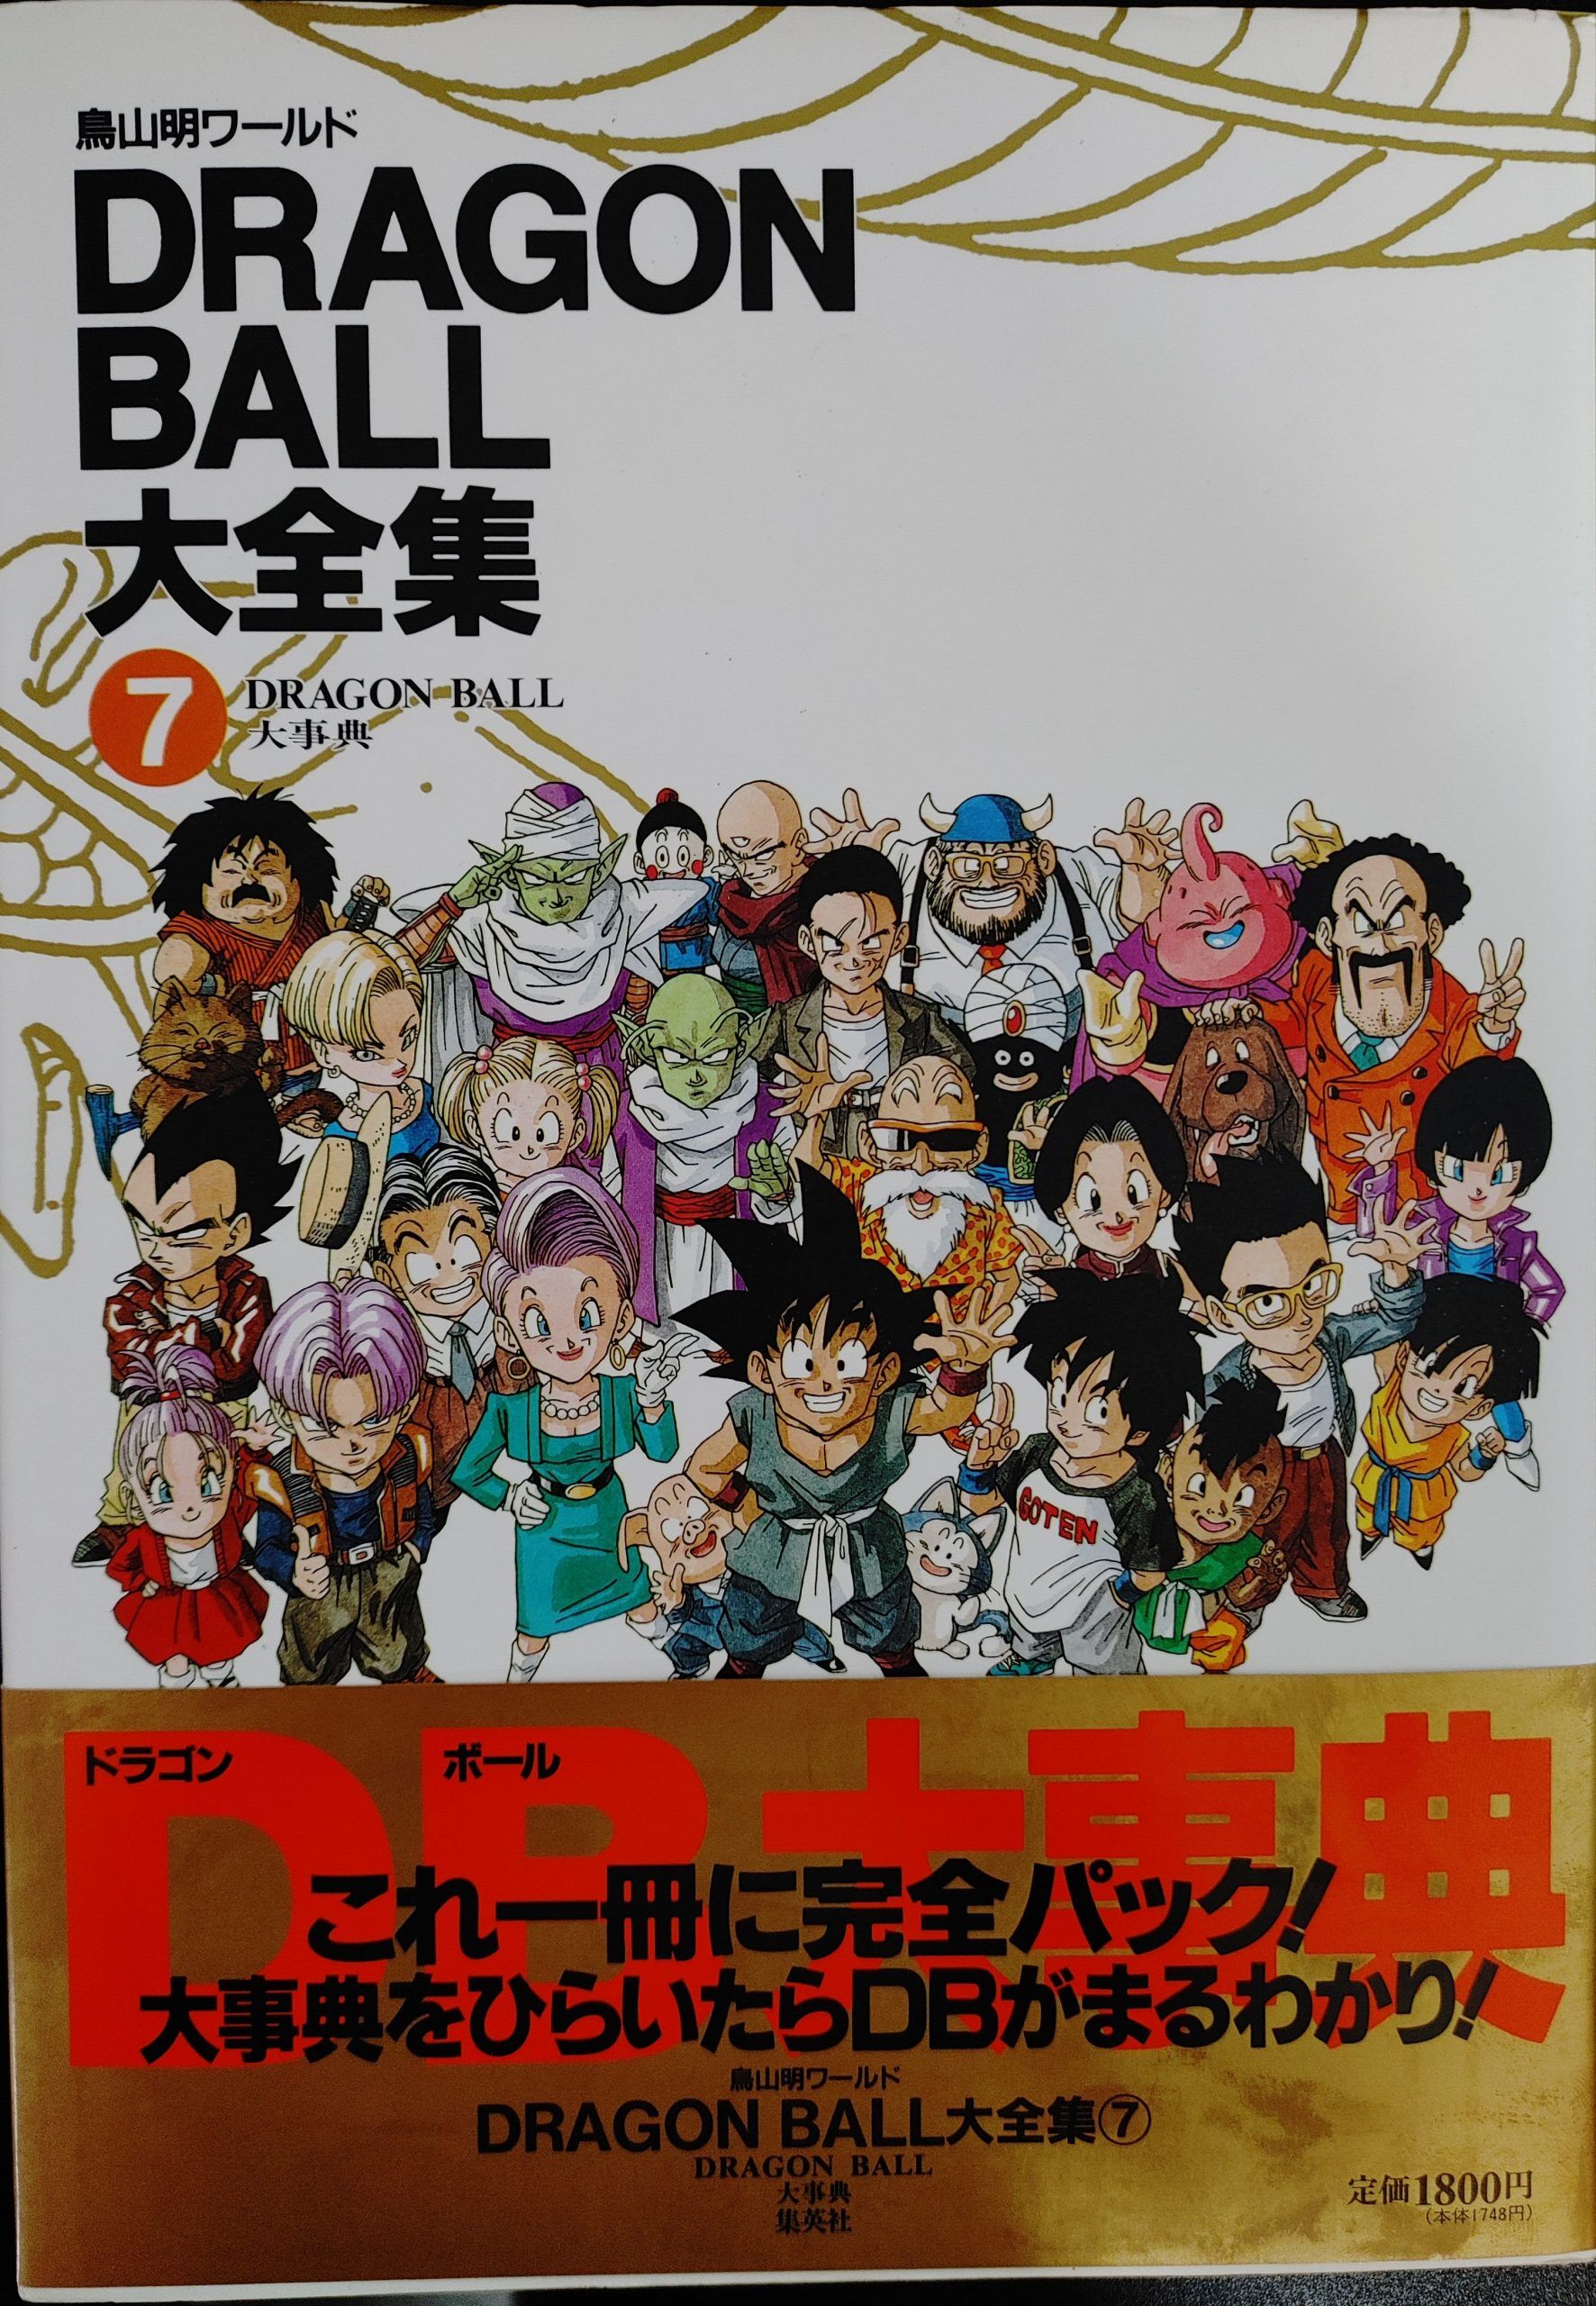 (BOOK) DRAGON BALL DAIZENSHU 7 DRAGON BALL DAIJITEN (+Obi/+Poster)